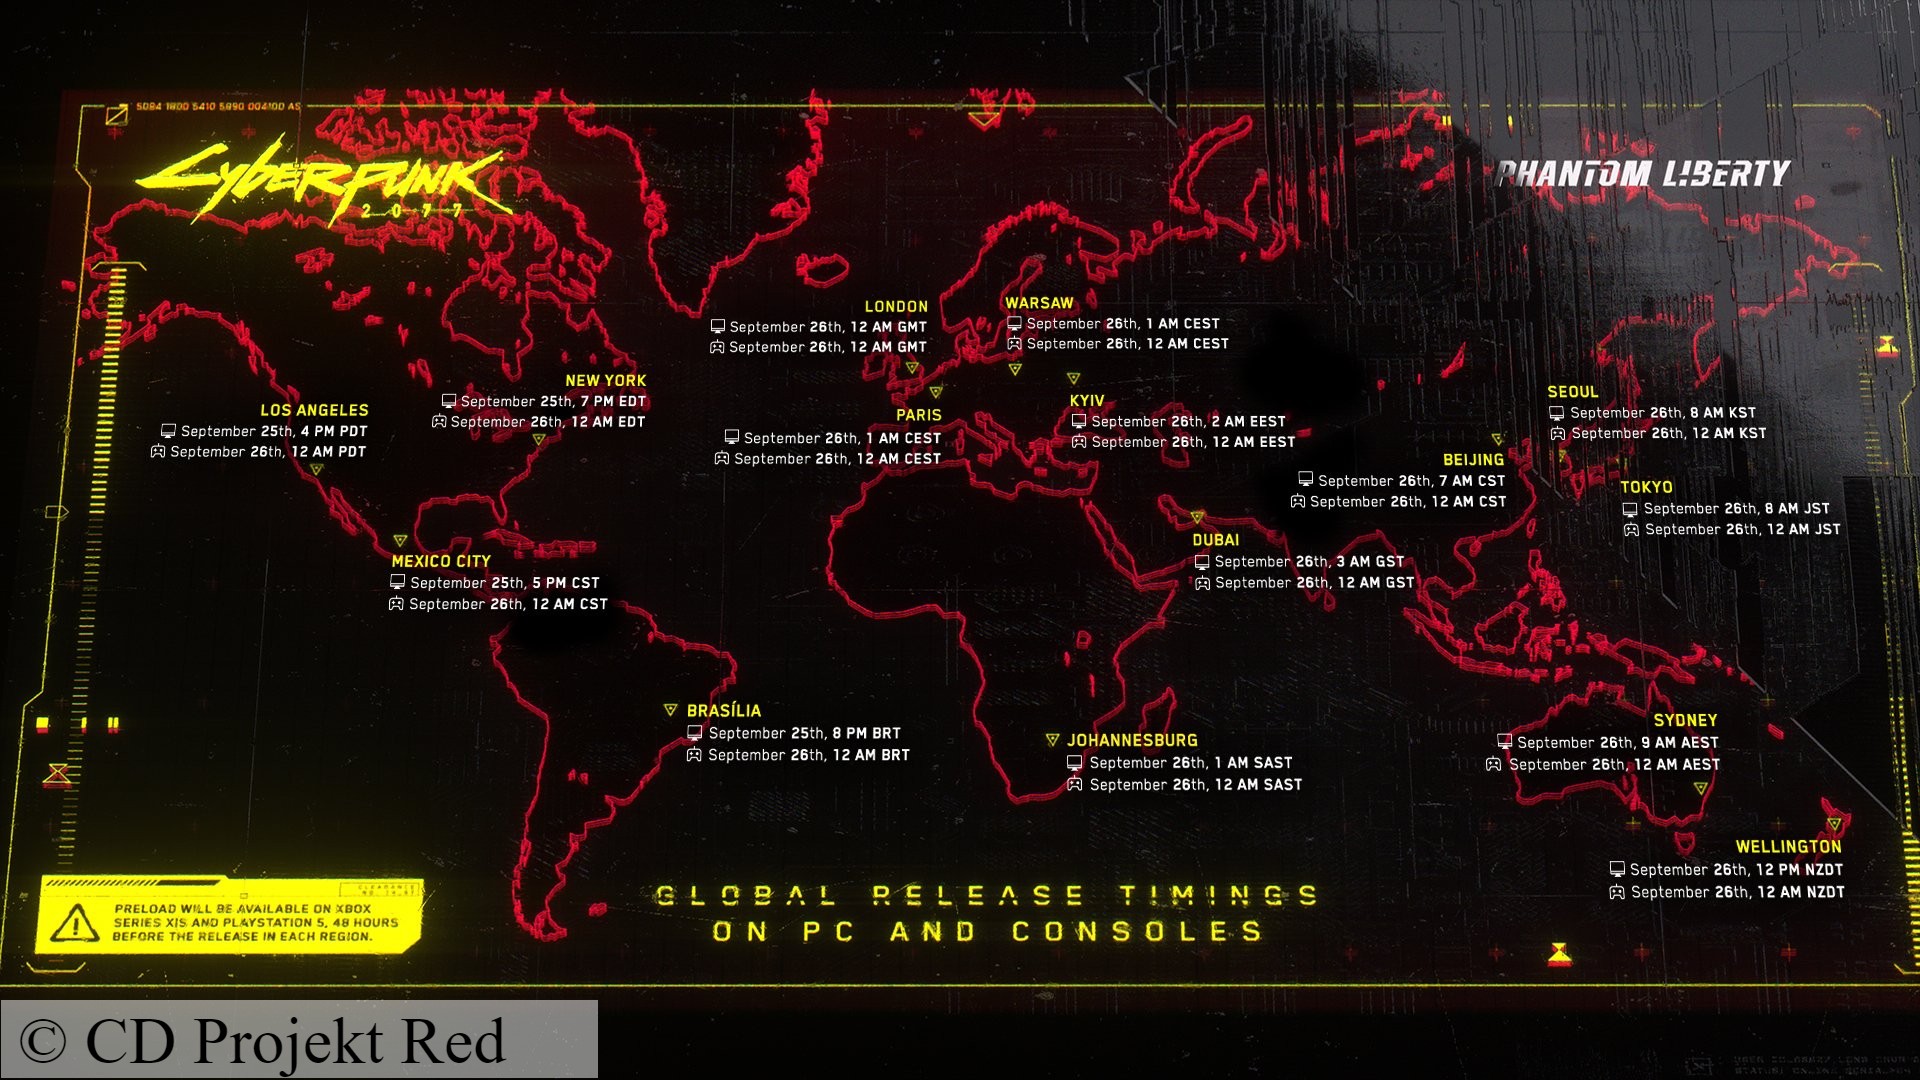 Tiempos de lanzamiento de Cyberpunk 2077 Phantom Liberty: un mapa que muestra los tiempos de lanzamiento del juego de rol Cyberpunk 2077 Phantom Liberty